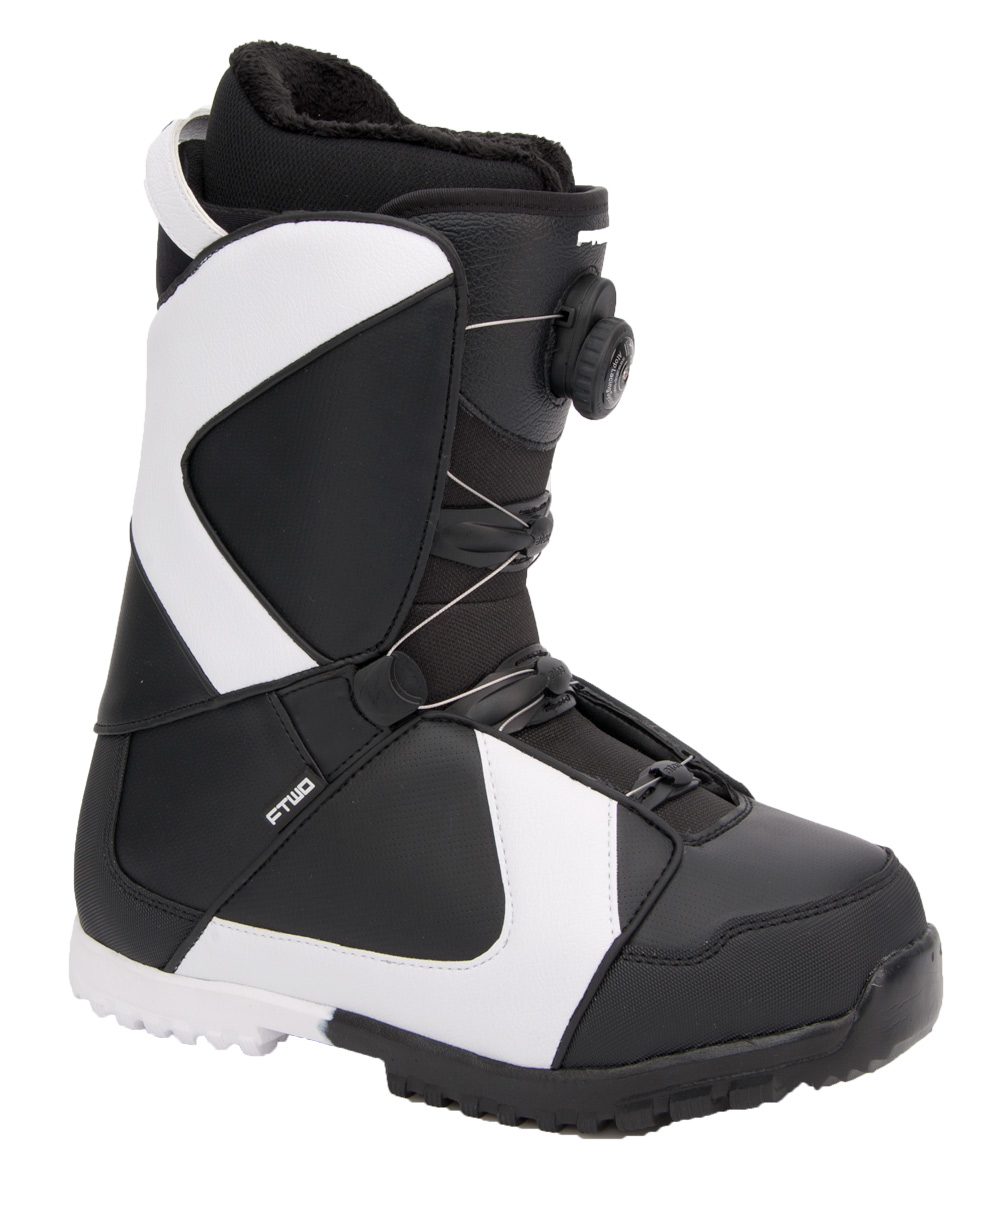 Ботинки сноубордические F2 Air размер 28,0 black/black 